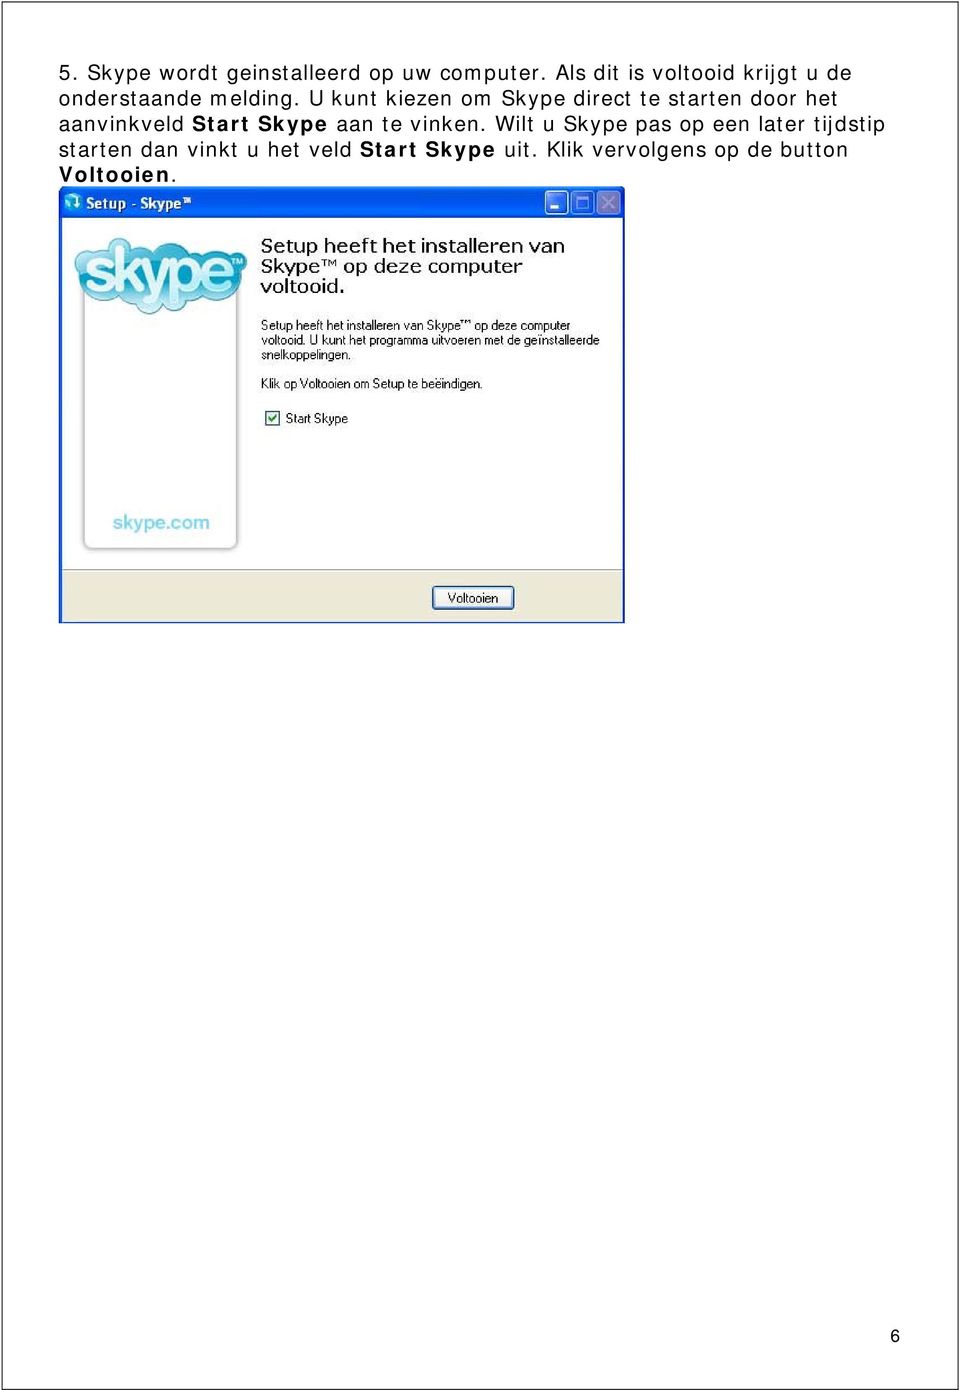 U kunt kiezen om Skype direct te starten door het aanvinkveld Start Skype aan